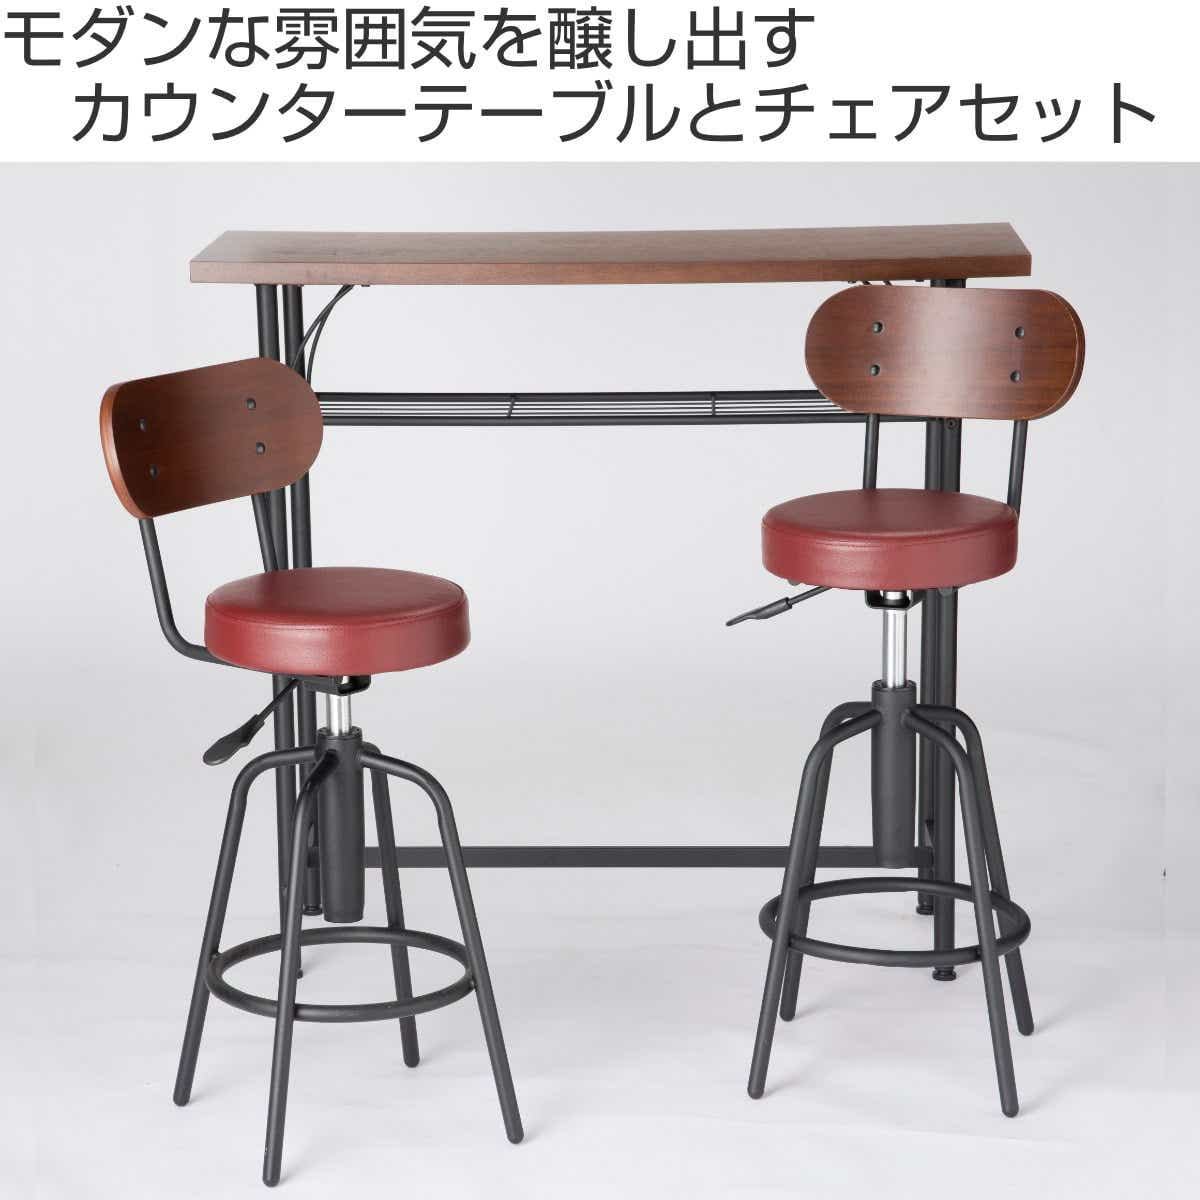 カウンターチェア 木製 360度回転 足置き付き カウンター椅子93-108cm